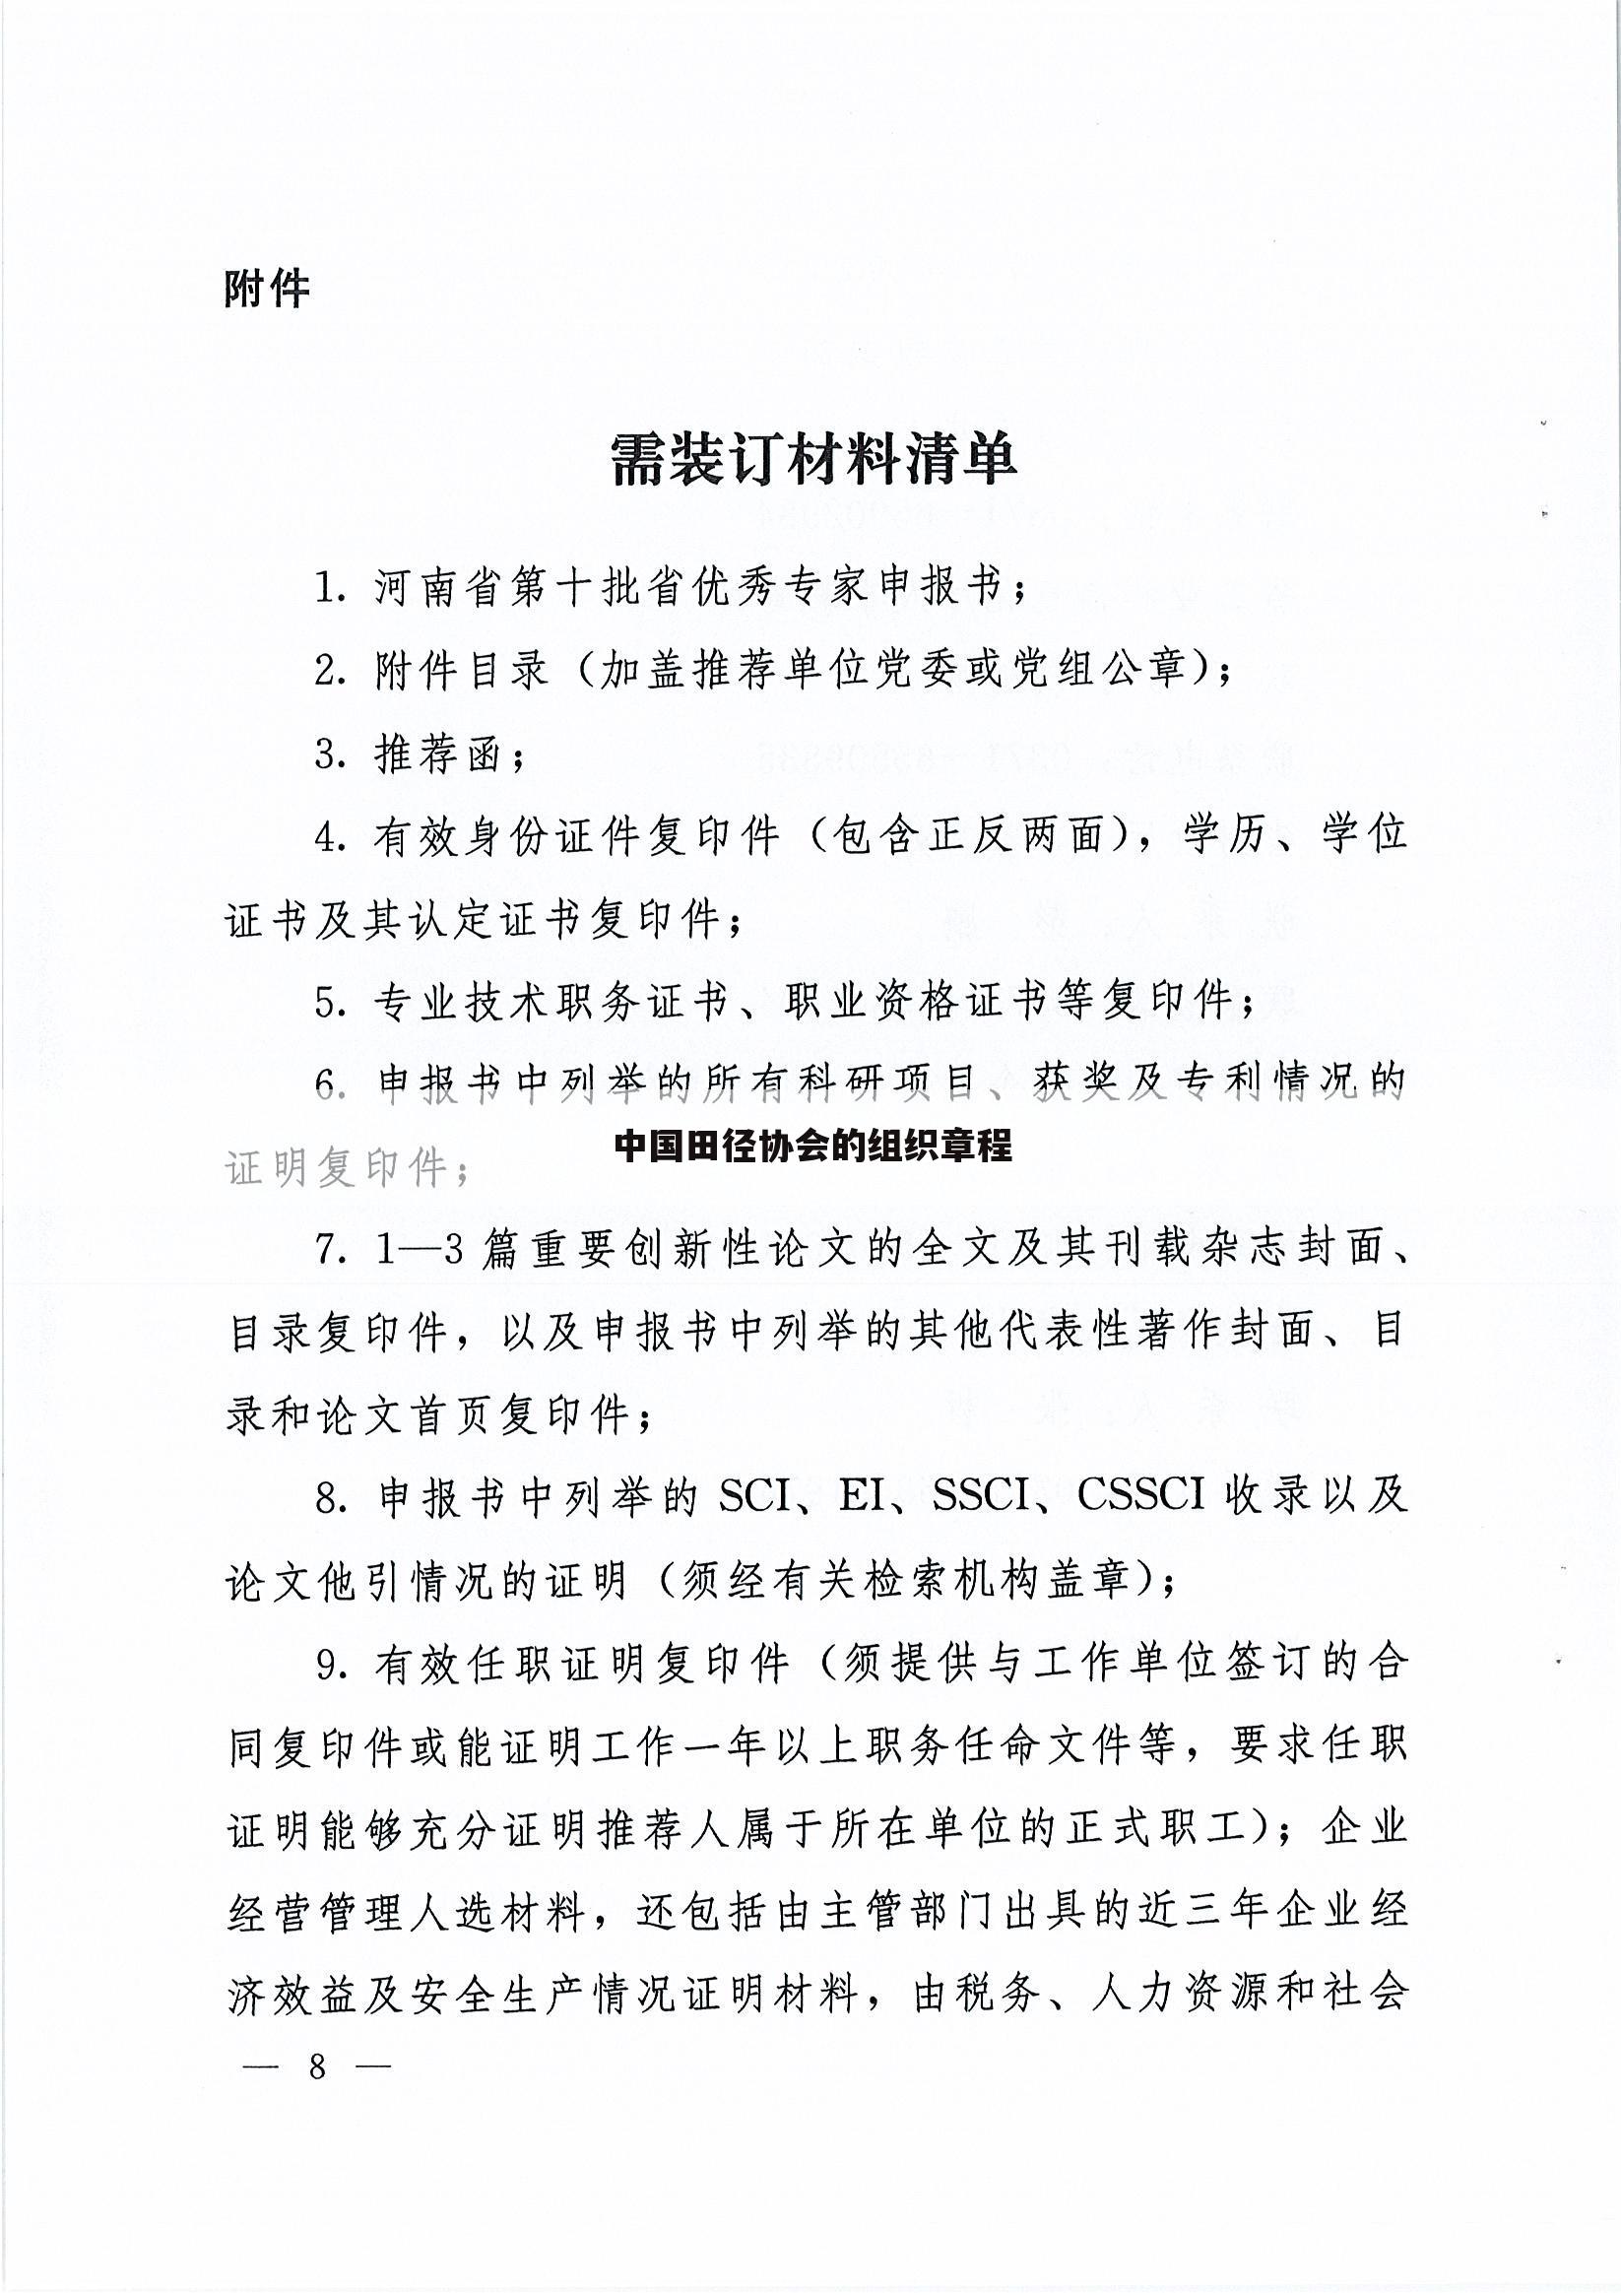 中国田径协会的组织章程